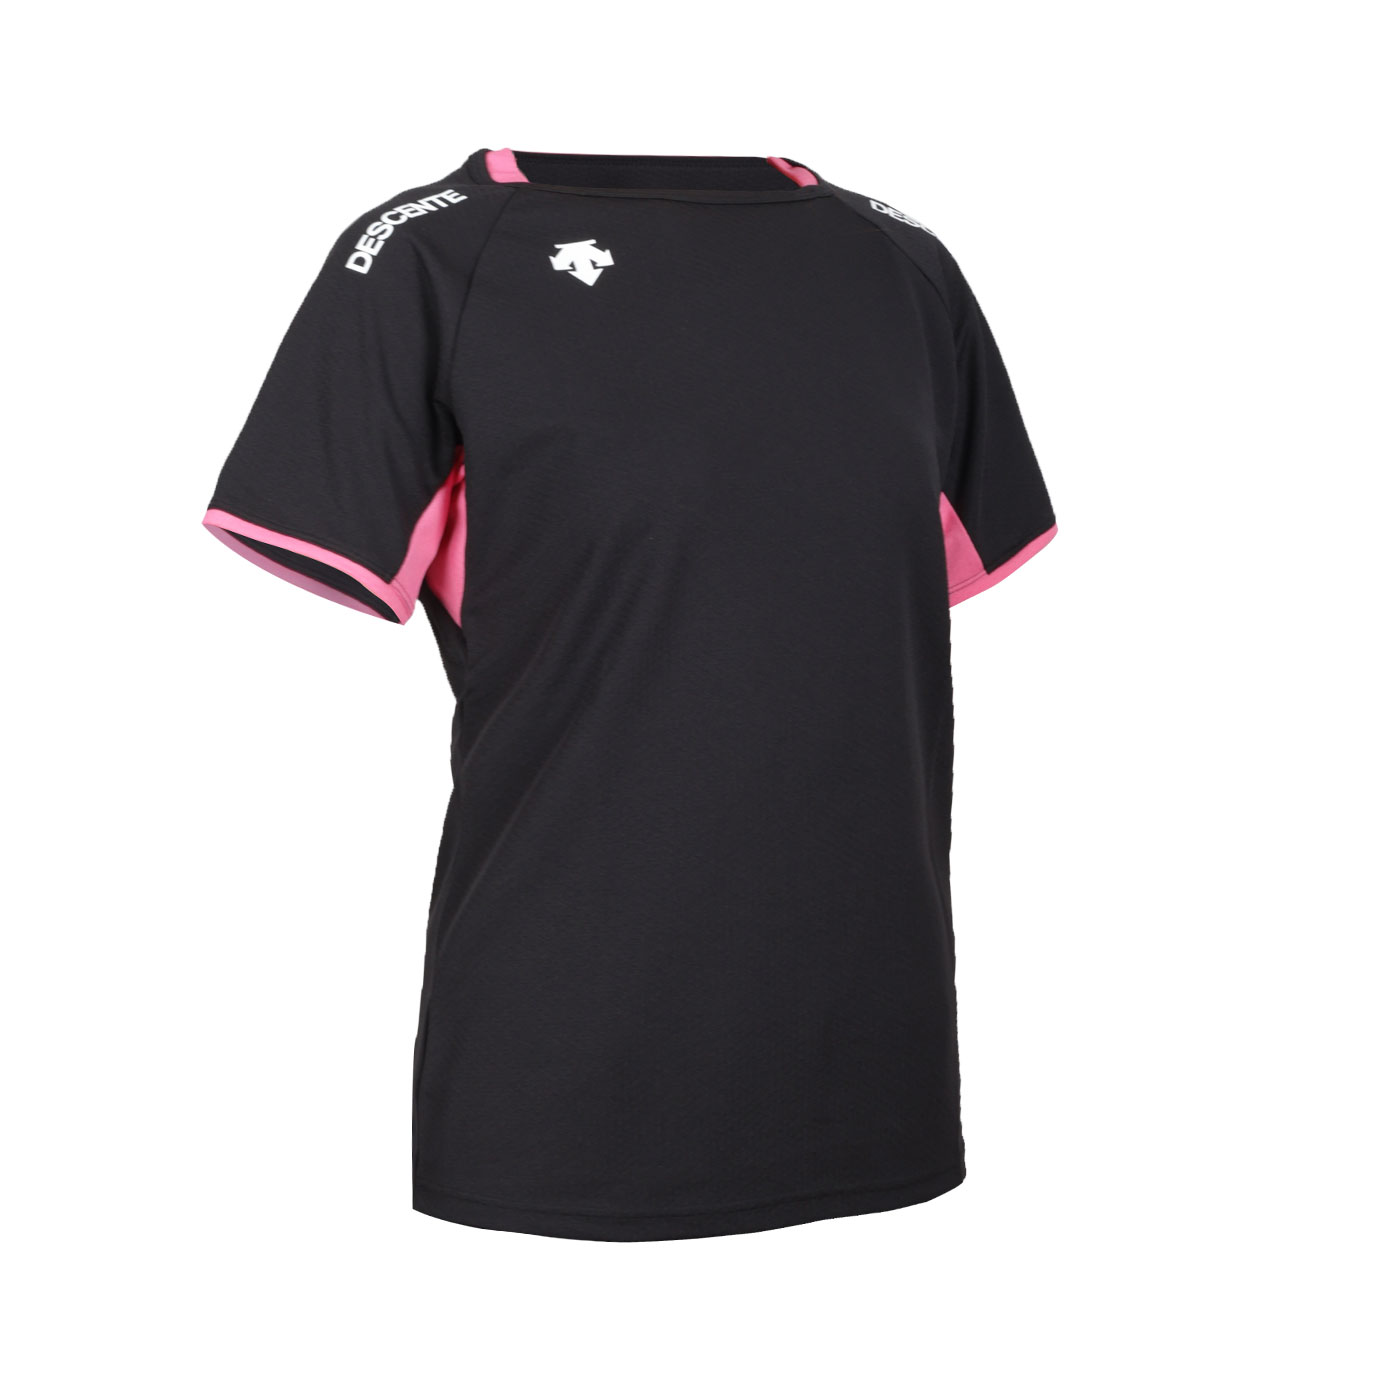 DESCENTE 女款排球短袖T恤  DVB-5223WBT-BPK - 黑白粉紅